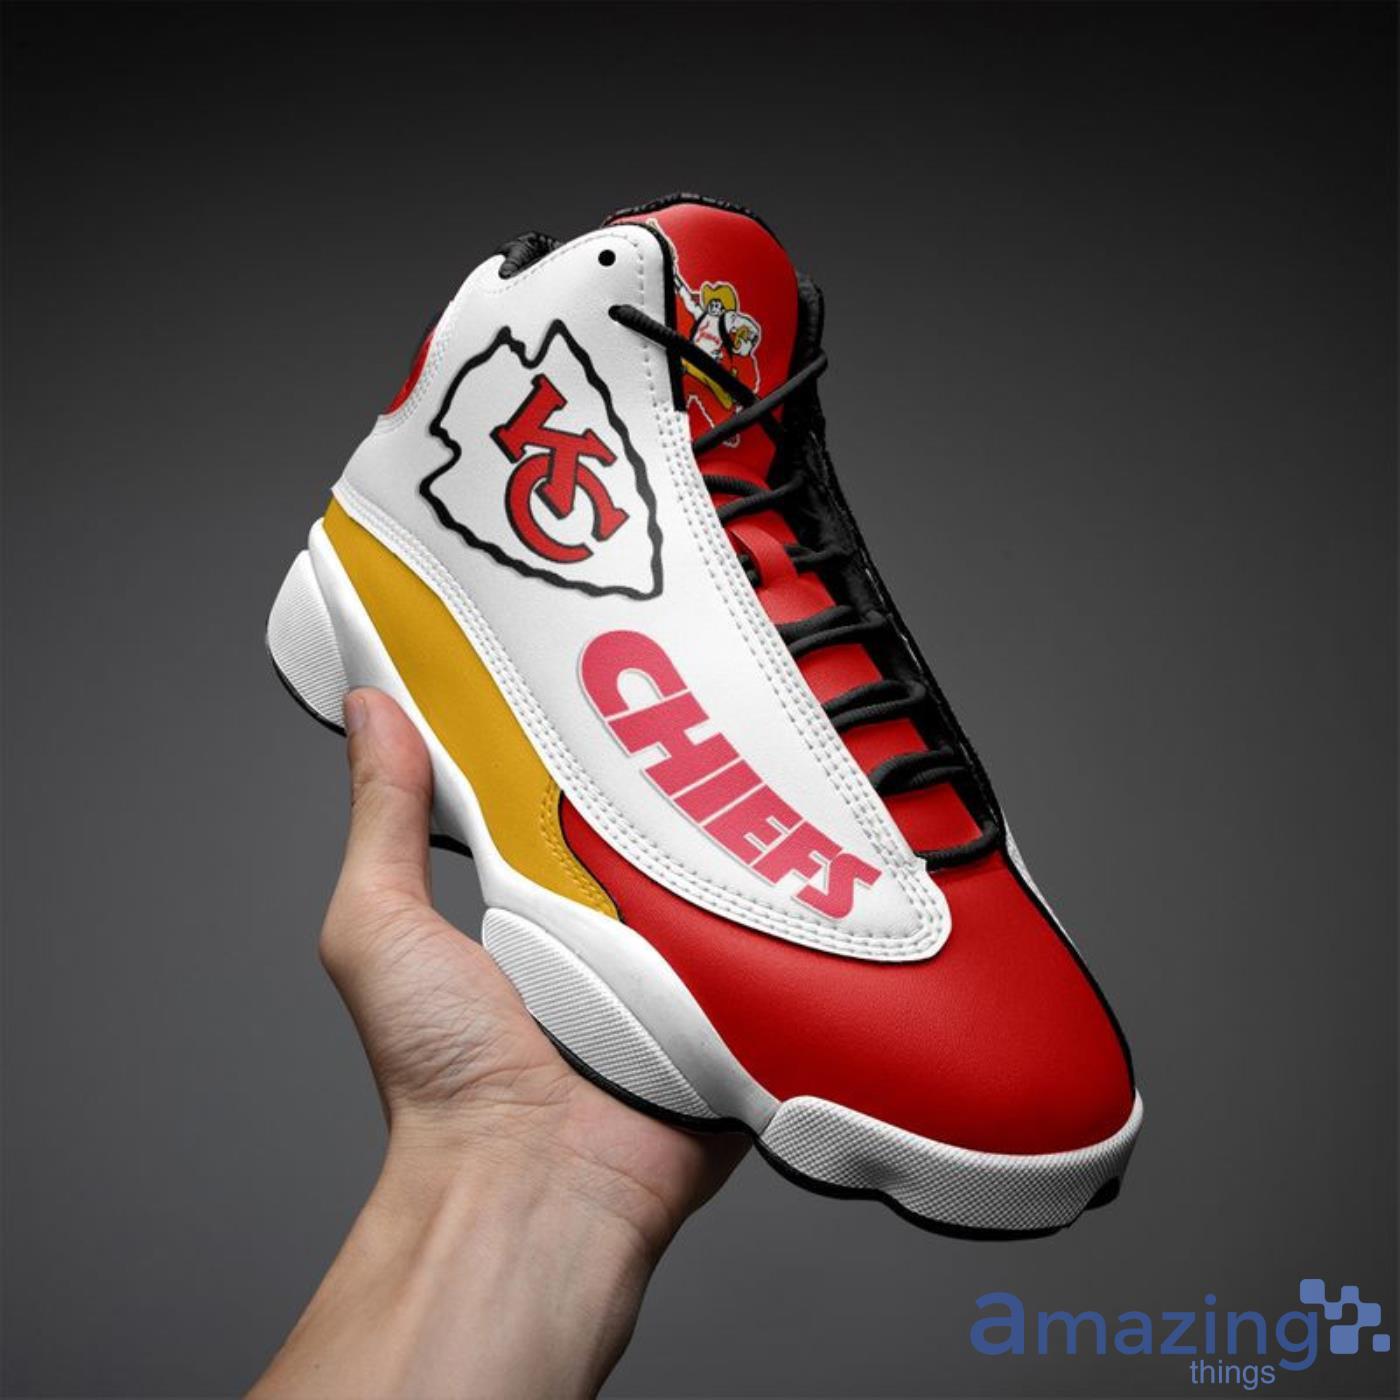 Nfl Kansas City Chiefs Custom Name Air Jordan 13 Shoes –